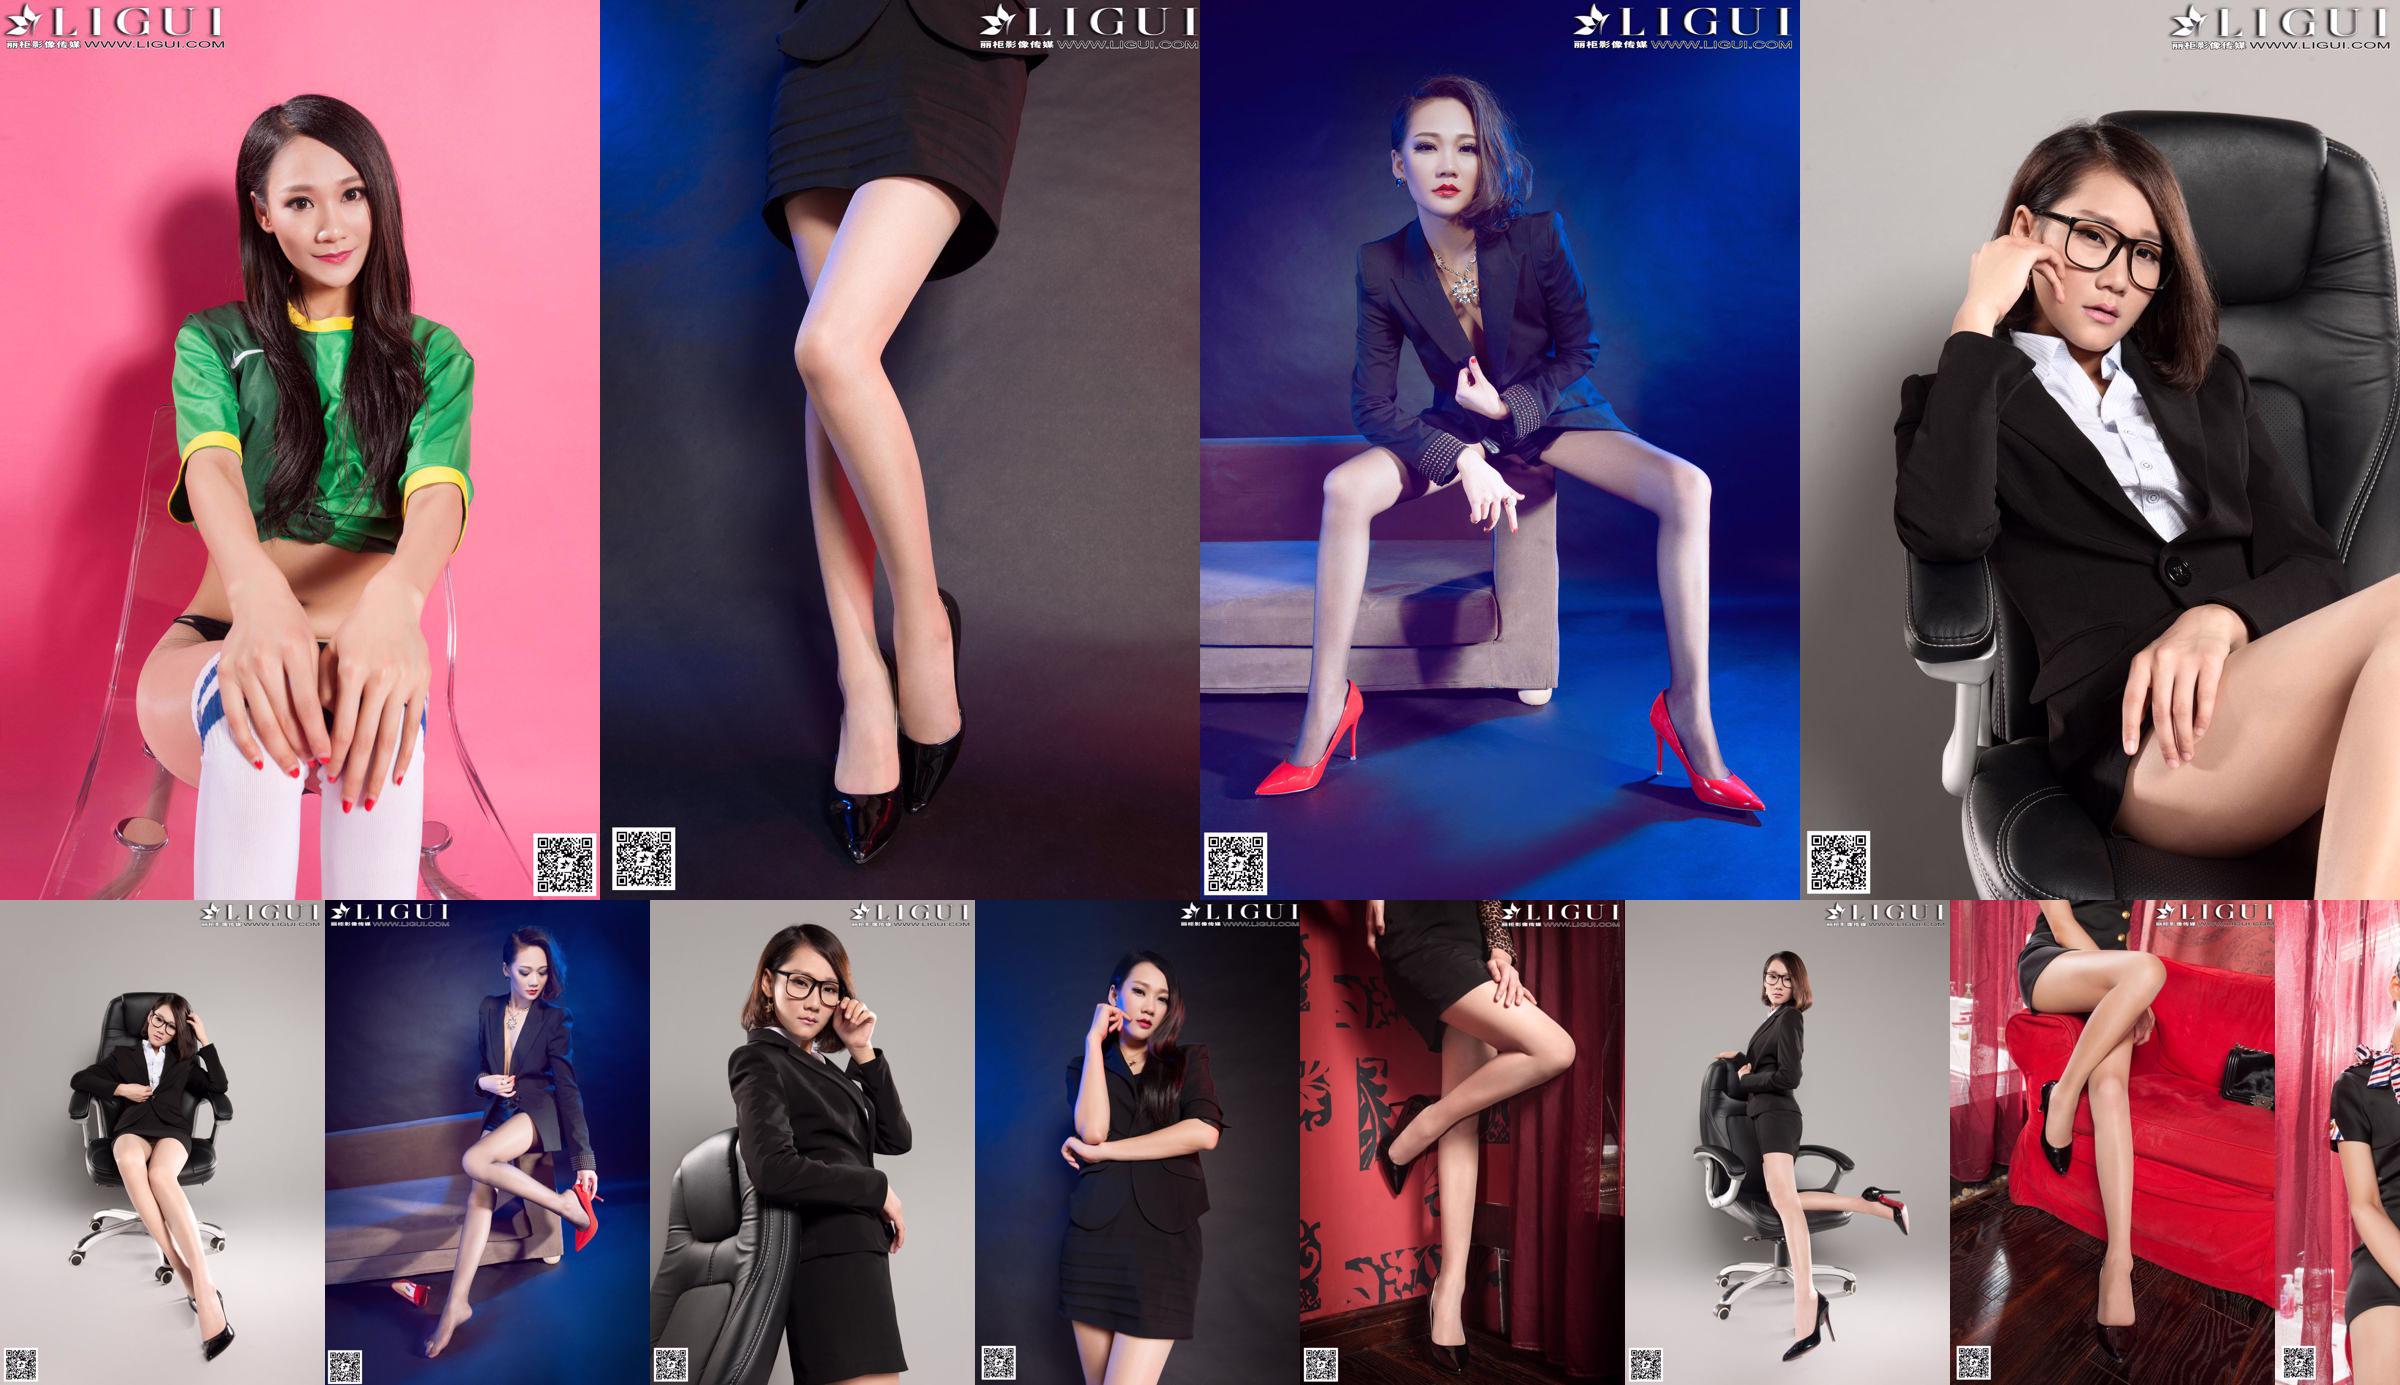 [丽 柜 LiGui] Collezione completa di belle gambe e fotografie di piedi di giada della modella Mandy "Piedi di seta con tacco alto e abbigliamento professionale No.a97f49 Pagina 1